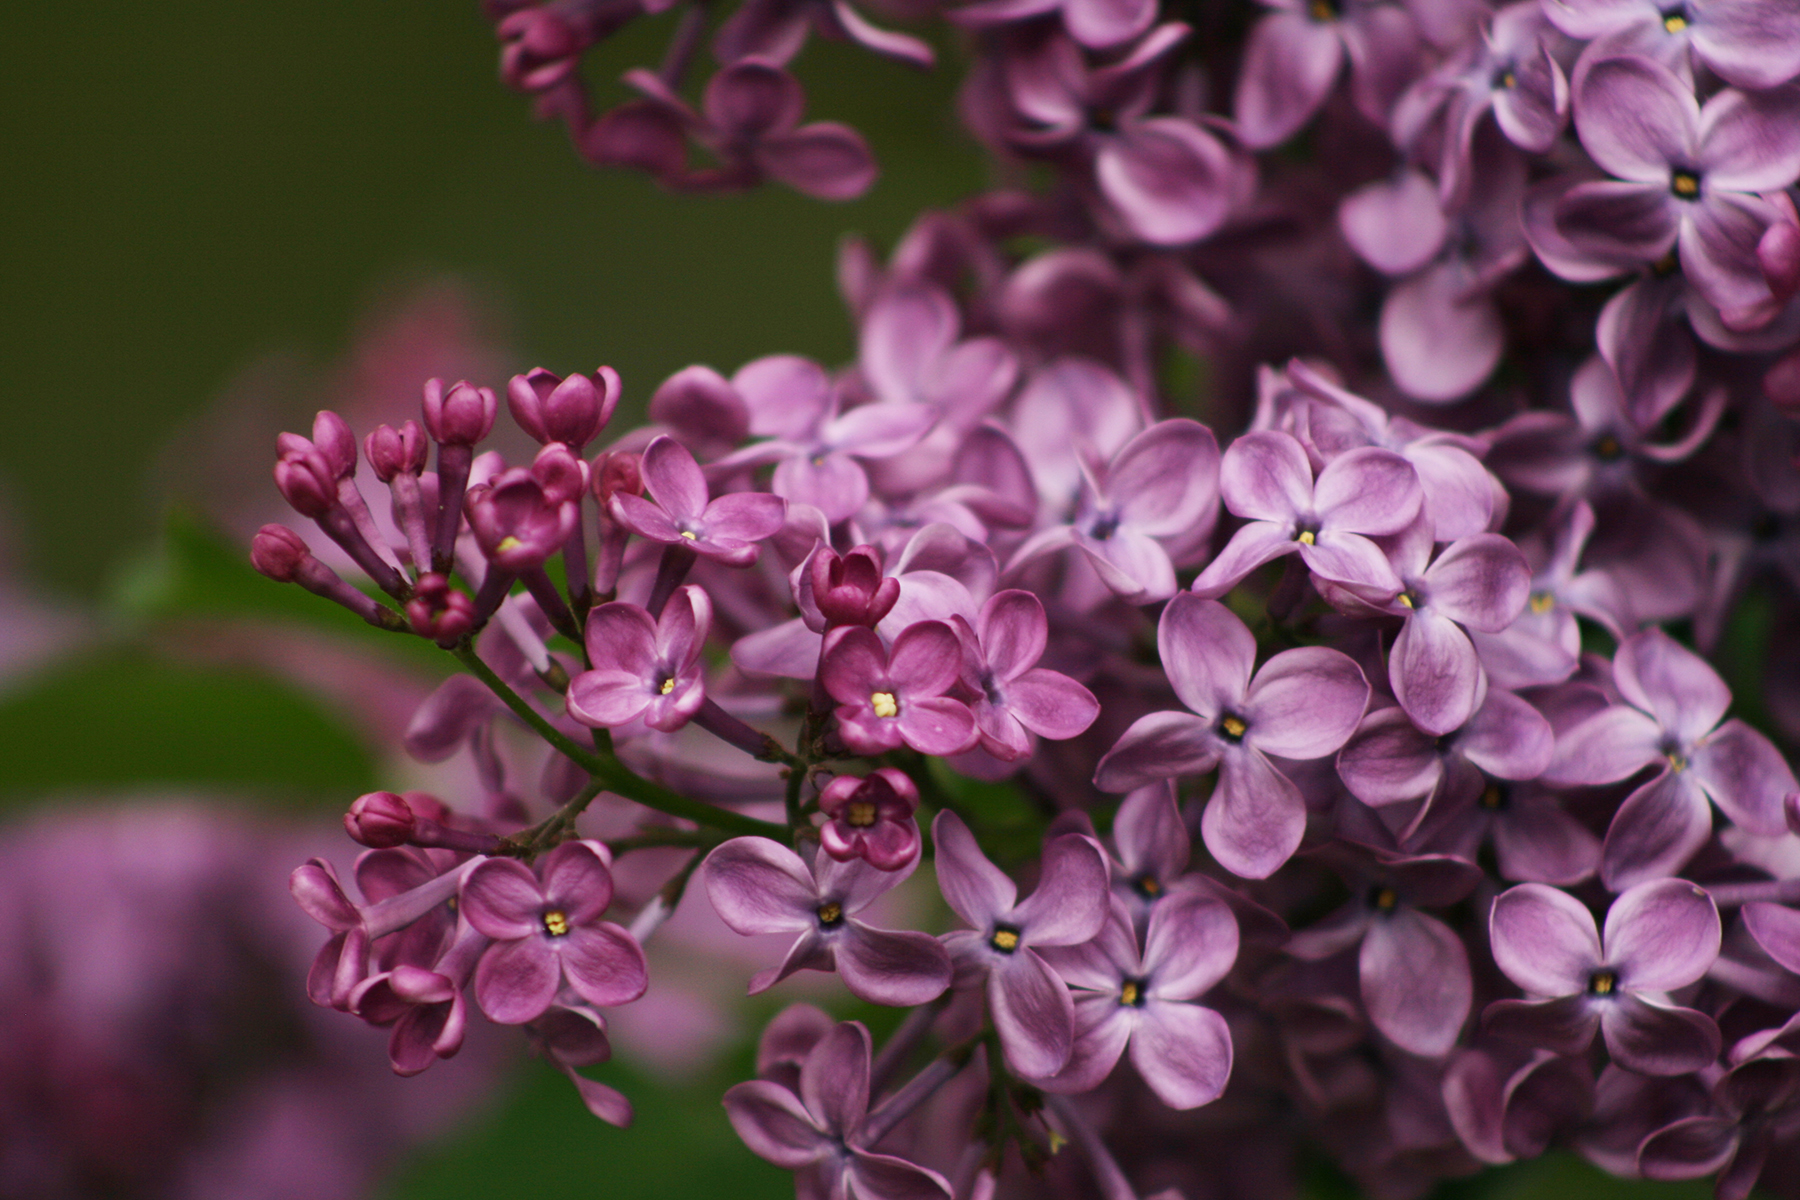 Tổng hợp những hình ảnh đẹp nhất về hoa tử đinh hương - [Kích thước hình ảnh: 1800x1200 px]